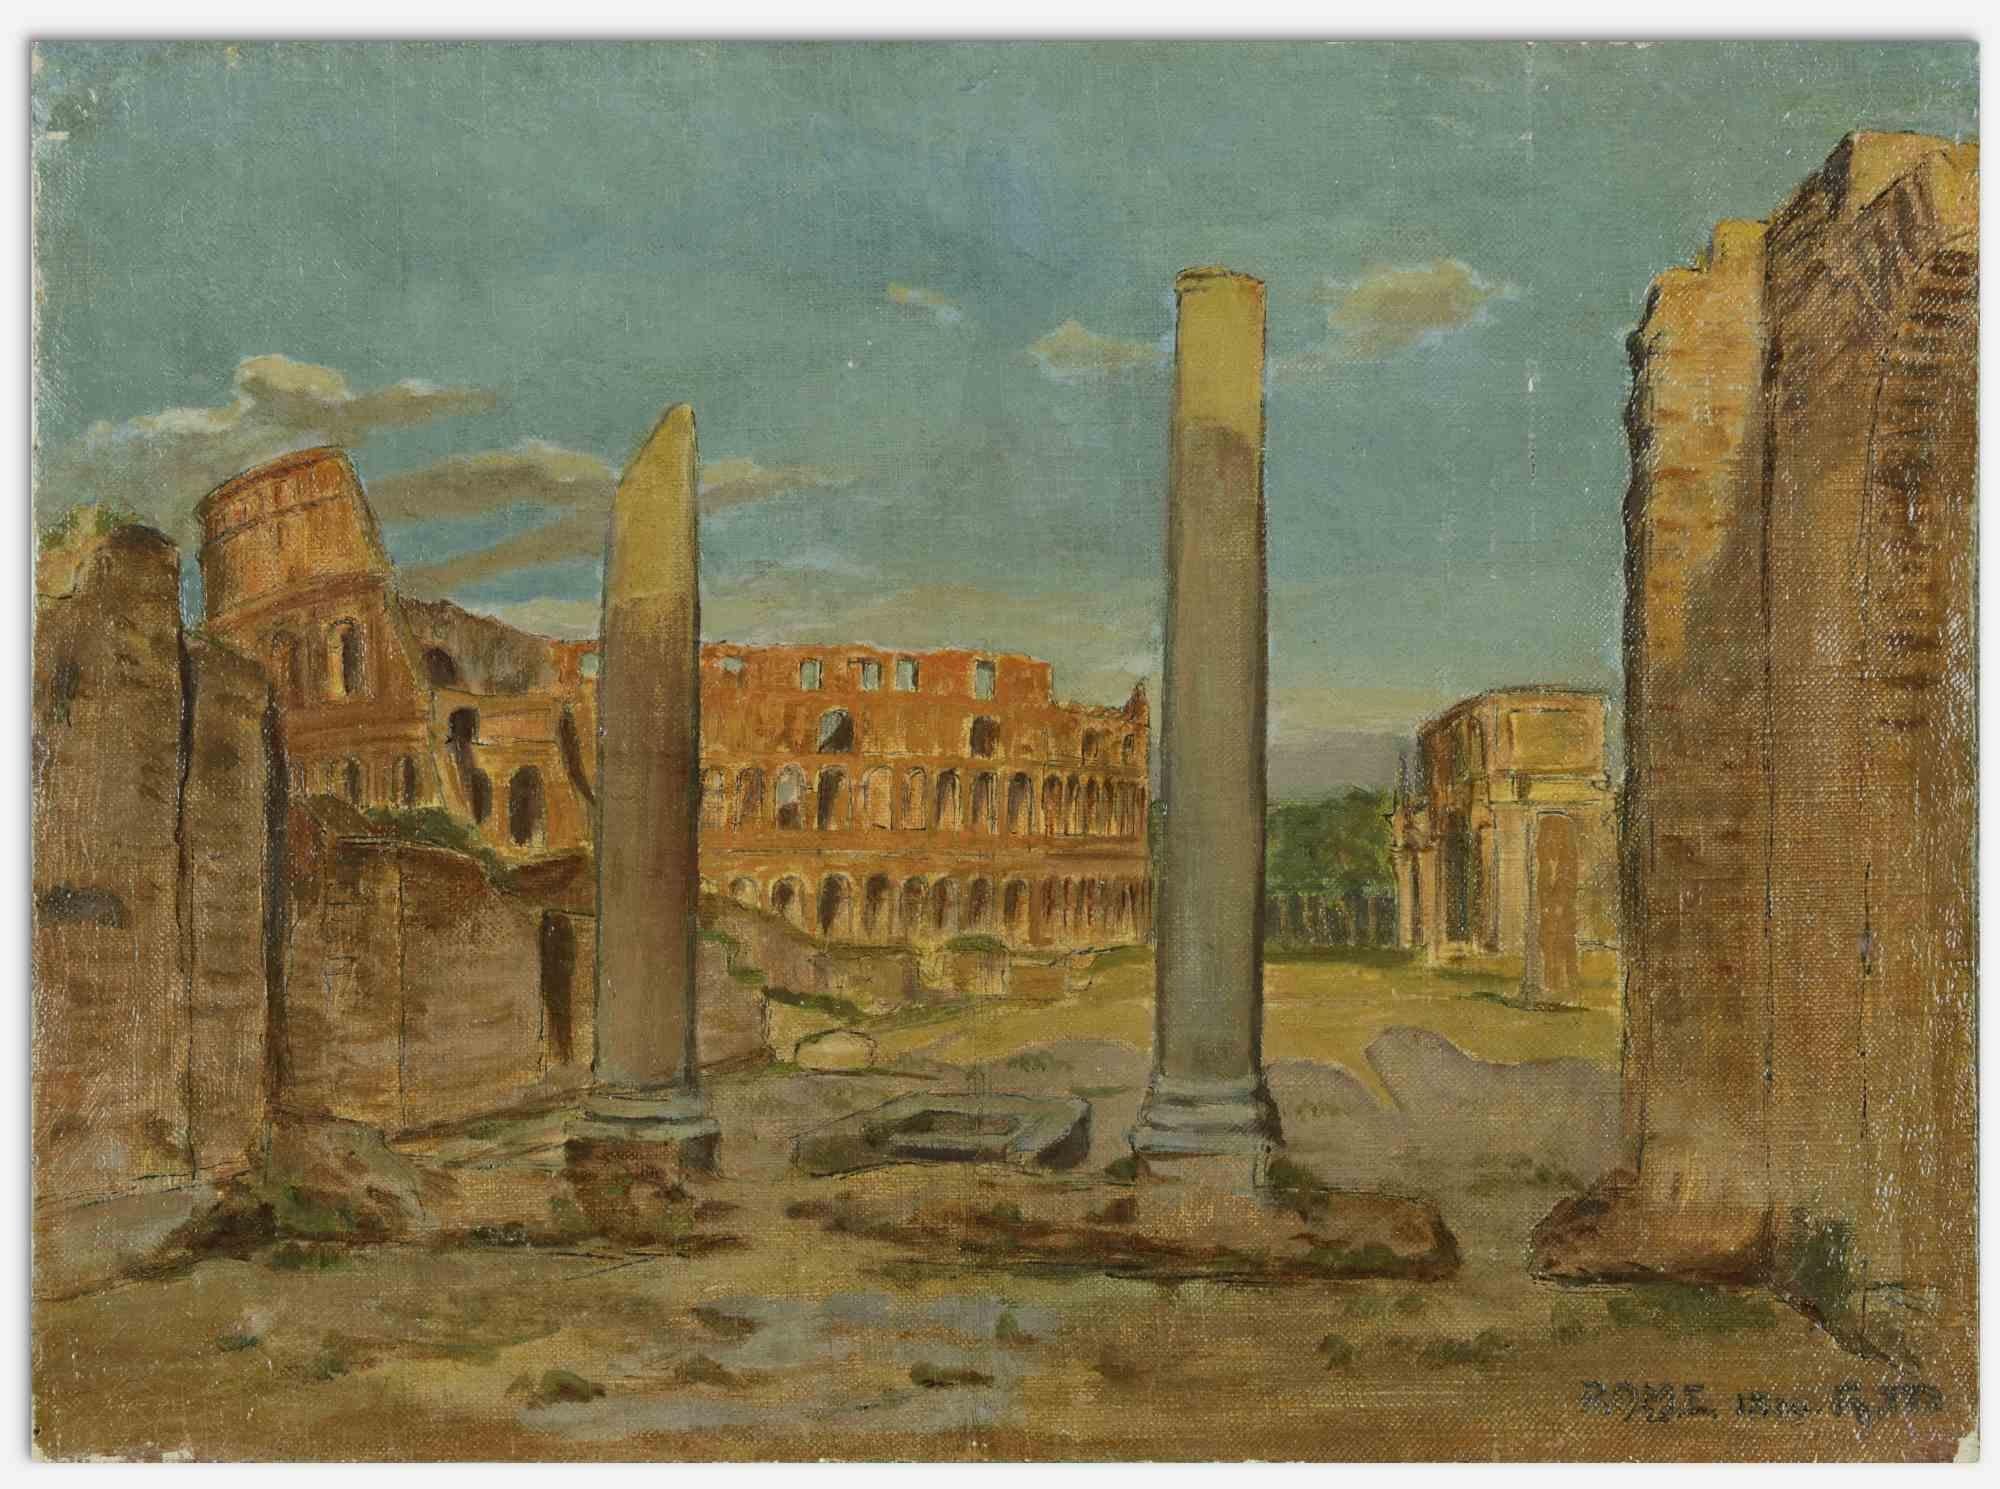 Forums impériaux et coliseum au fond - Peinture à l'huile - 1899